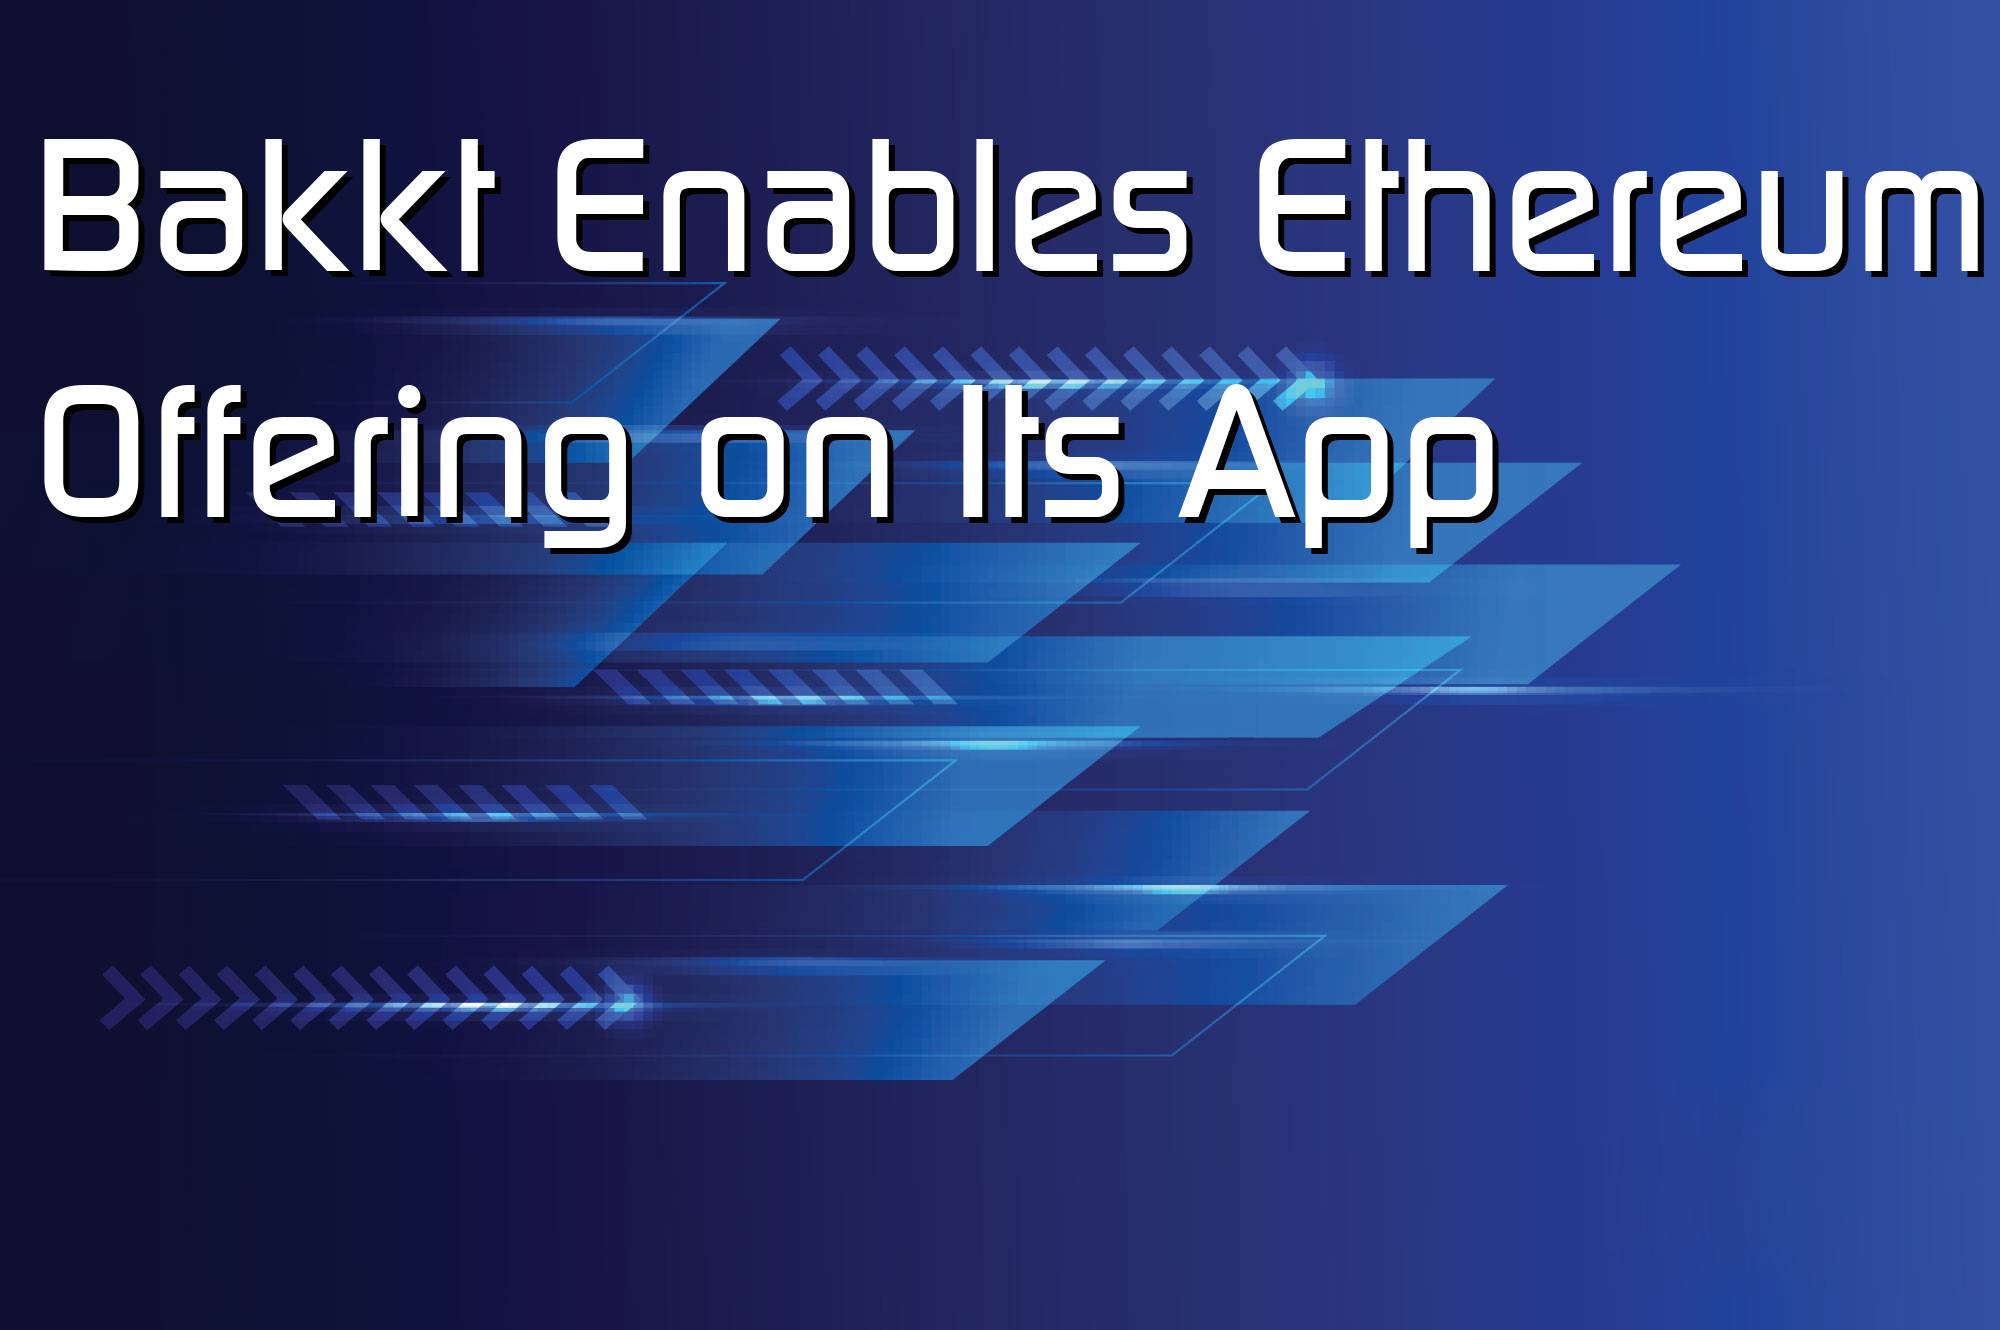 @$61083: Bakkt Enables Ethereum Offering on Its App